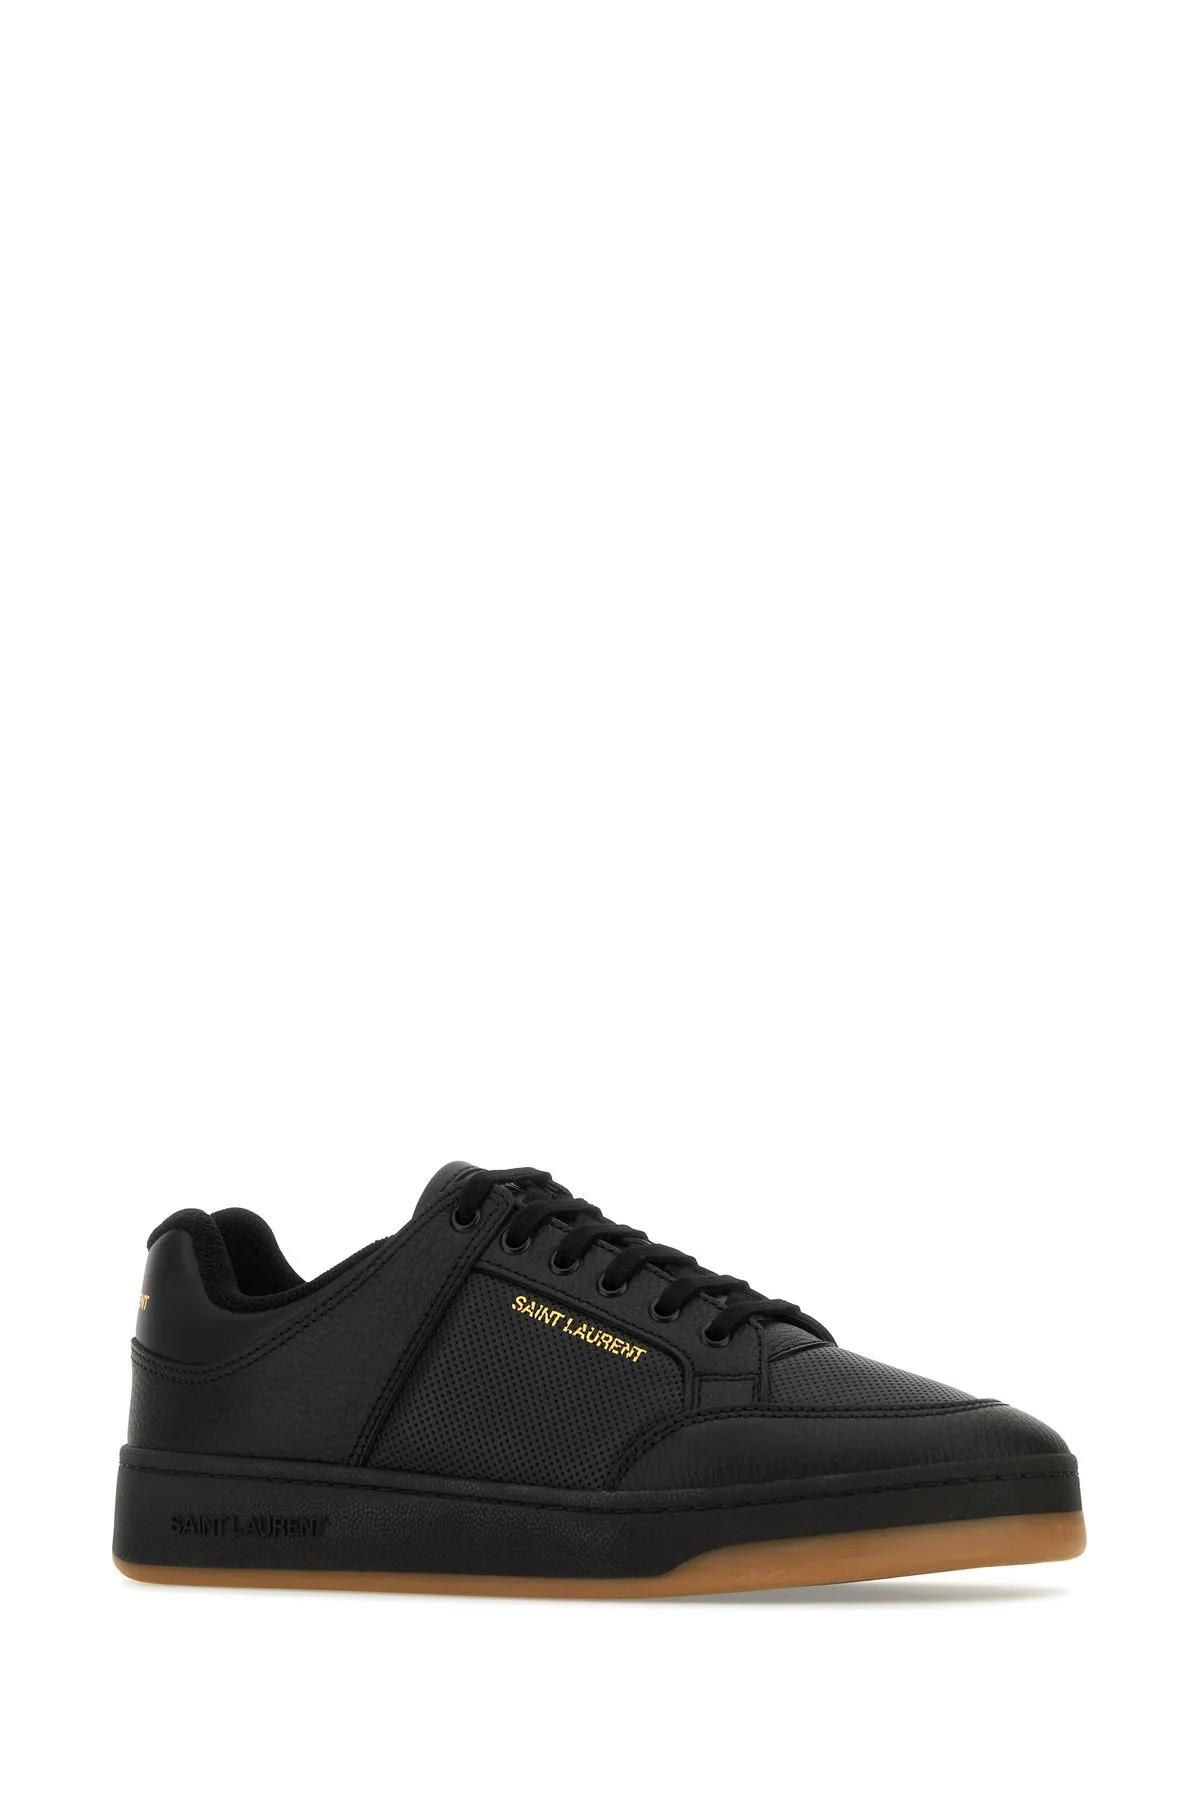 Shop Saint Laurent Black Leather Sneakers